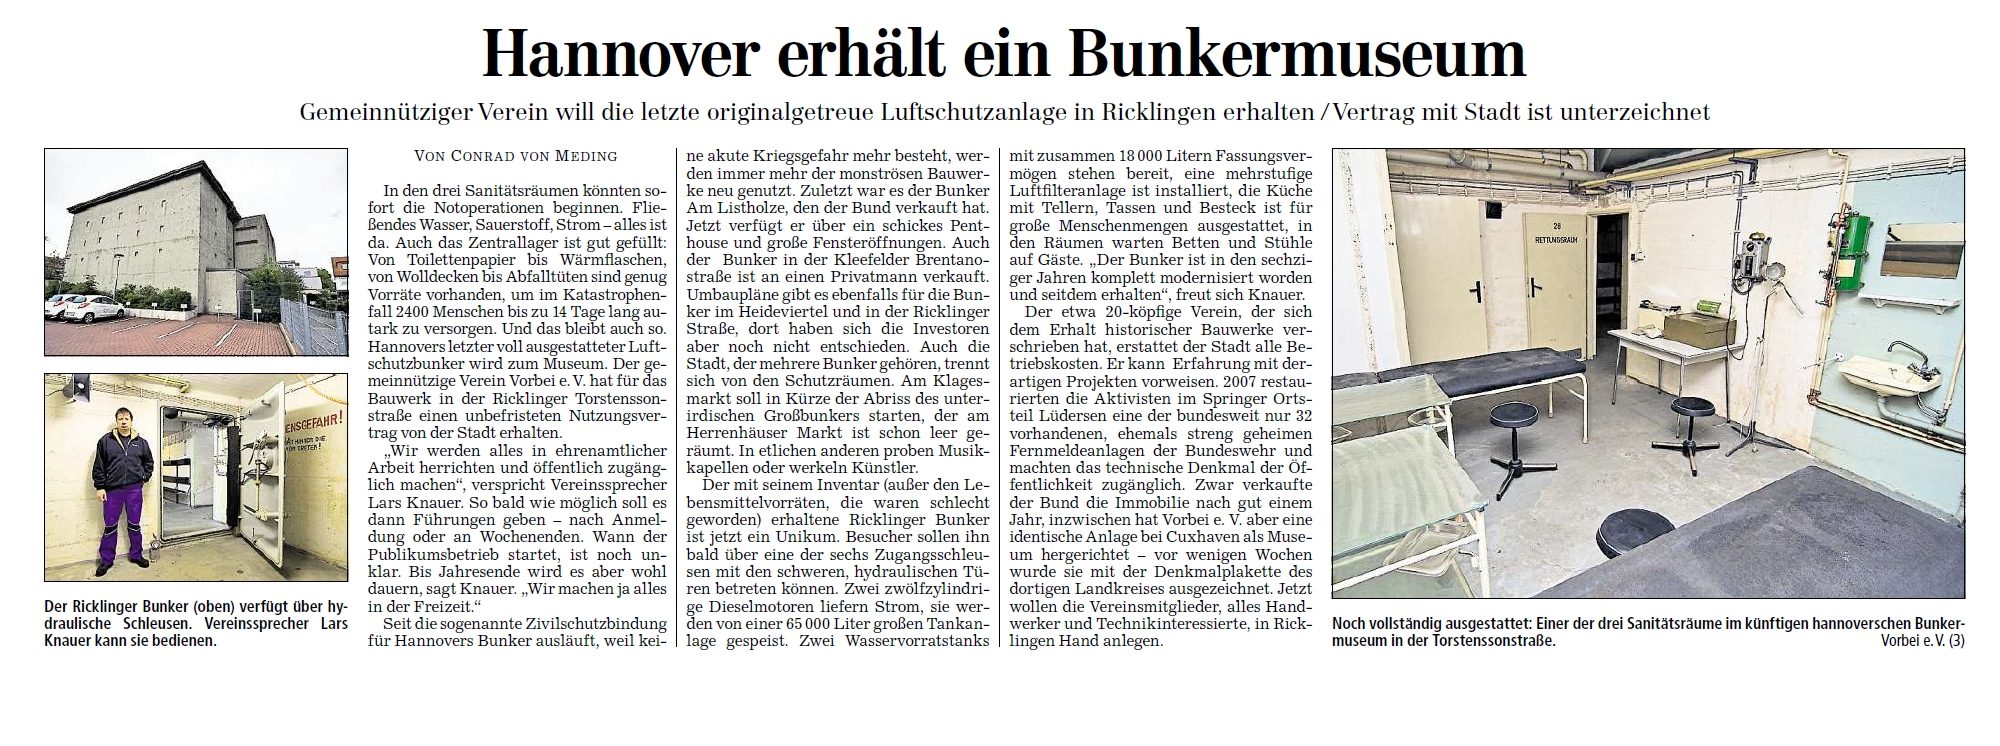 Hannover erhält ein Bunkermuseum - Gemeinnütziger Verein will die letzte originalgetreue Luftschutzanlage in Ricklingen erhalten.